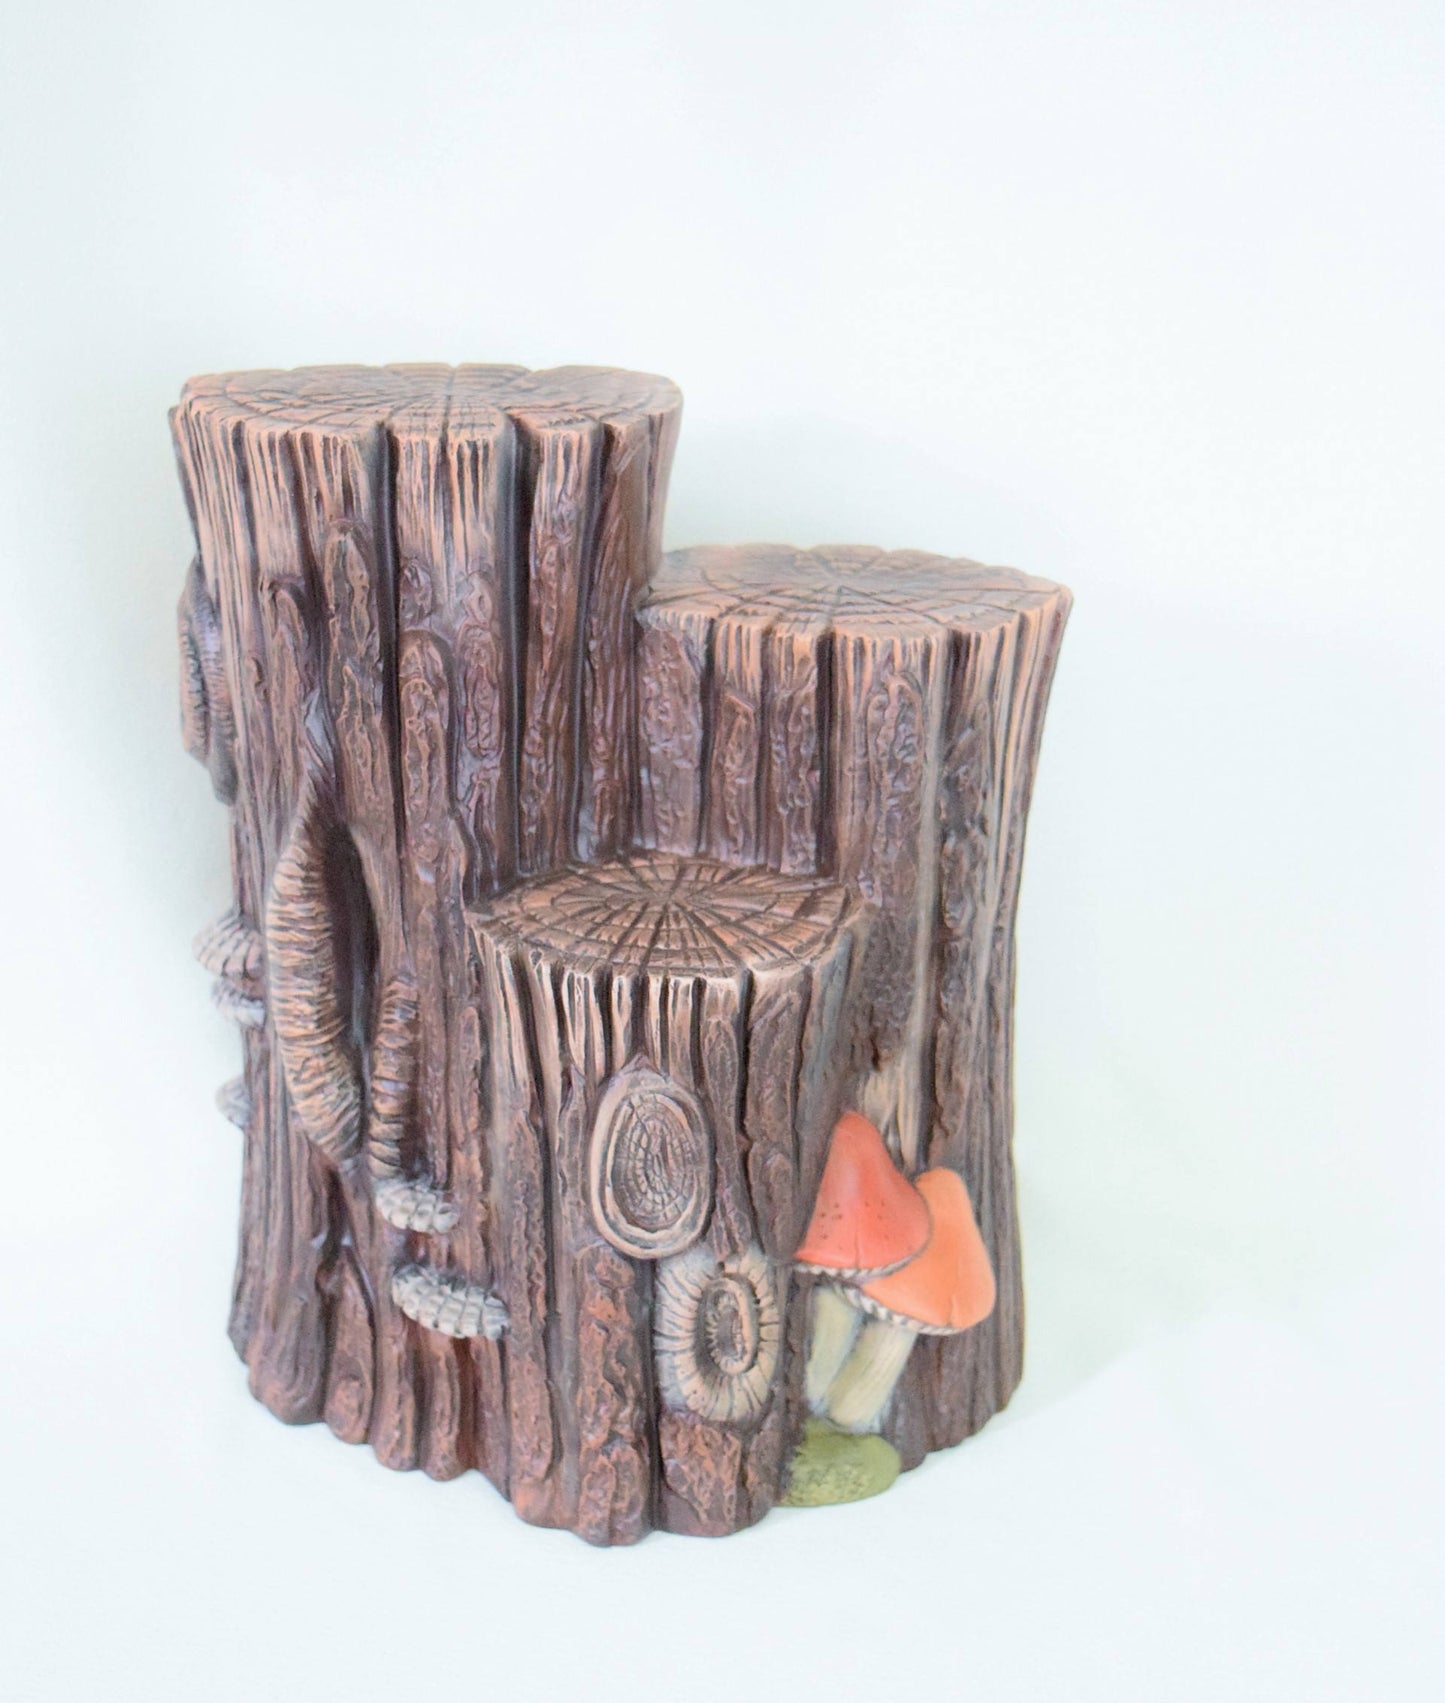 Bisque Ceramic Stump | DIY Project